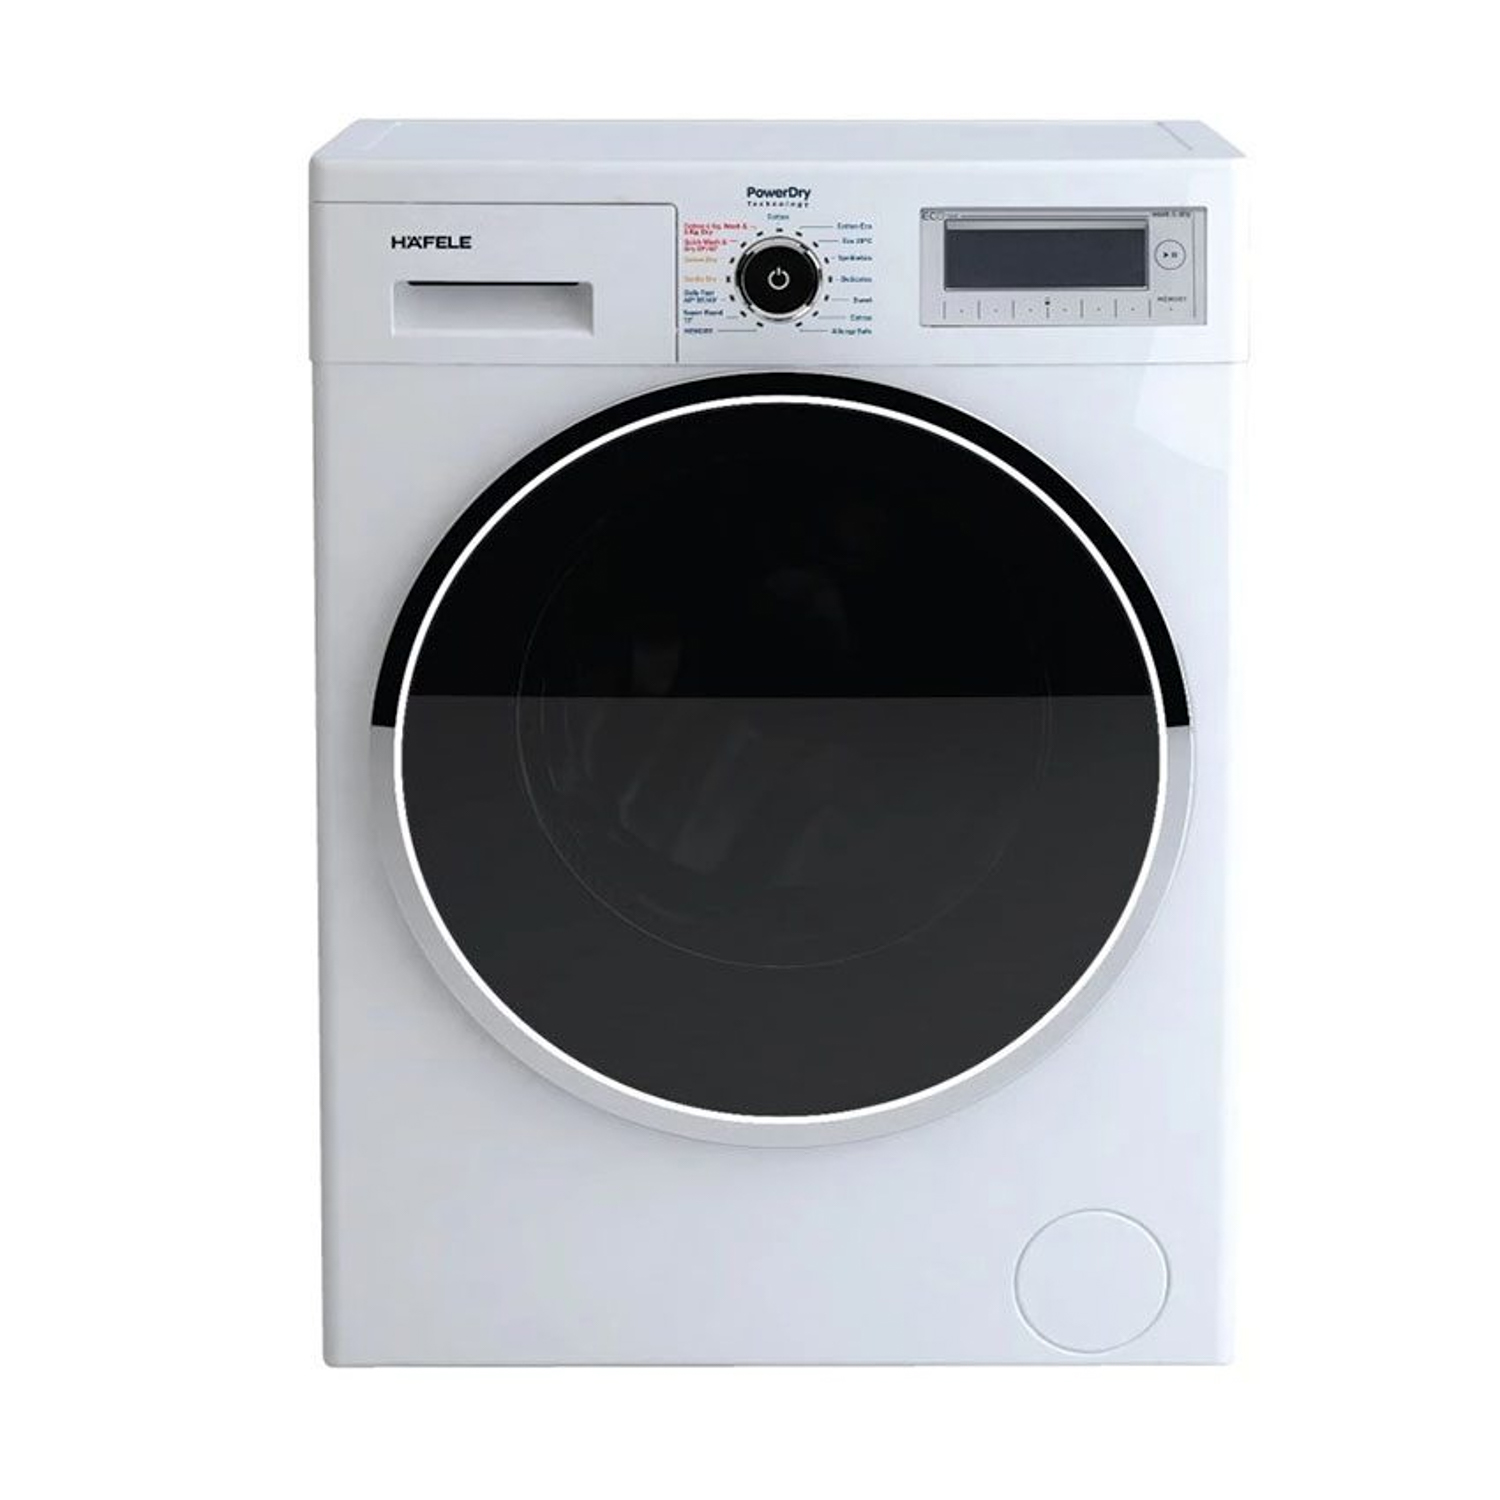 Sản phẩm máy giặt kết hợp sấy 9kg HWD-F60A 533.93.100